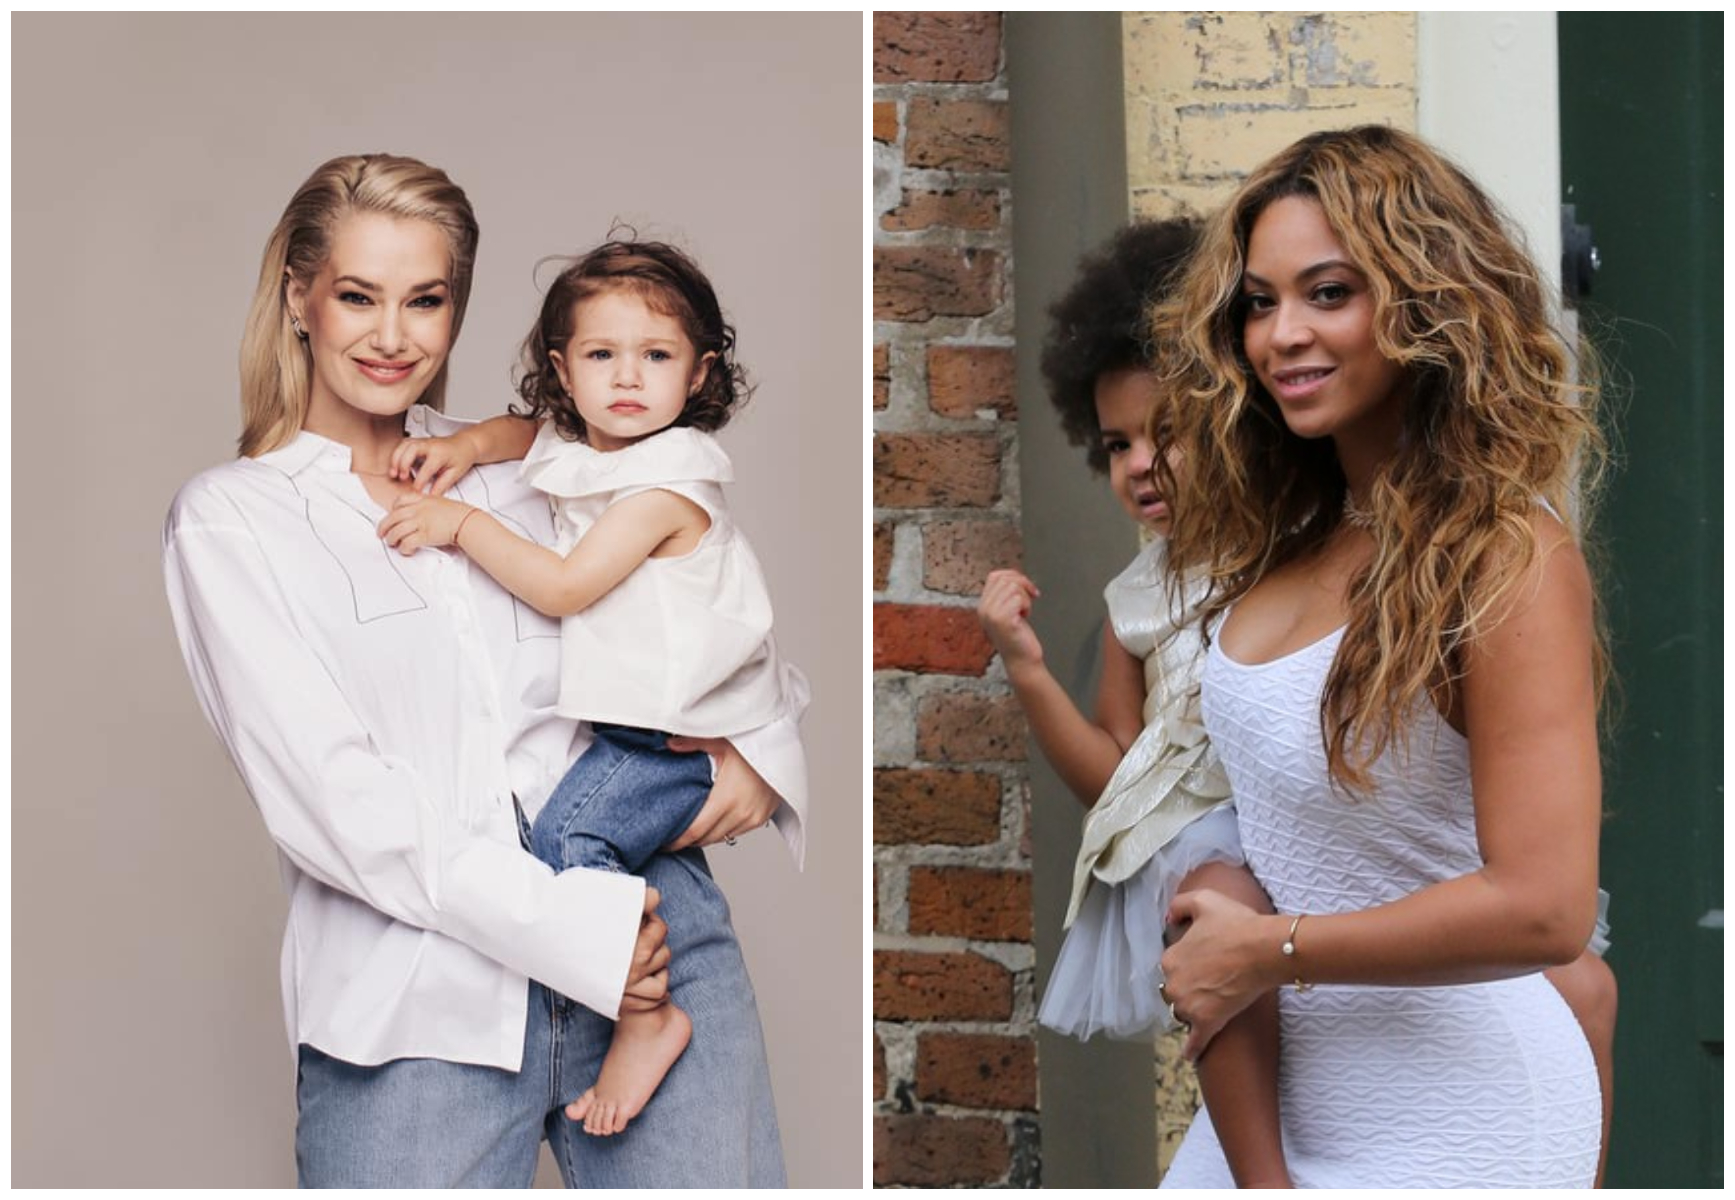 De la Feli până la Beyonce. Opt artiști celebri care și-au luat copiii cu ei în videoclipuri